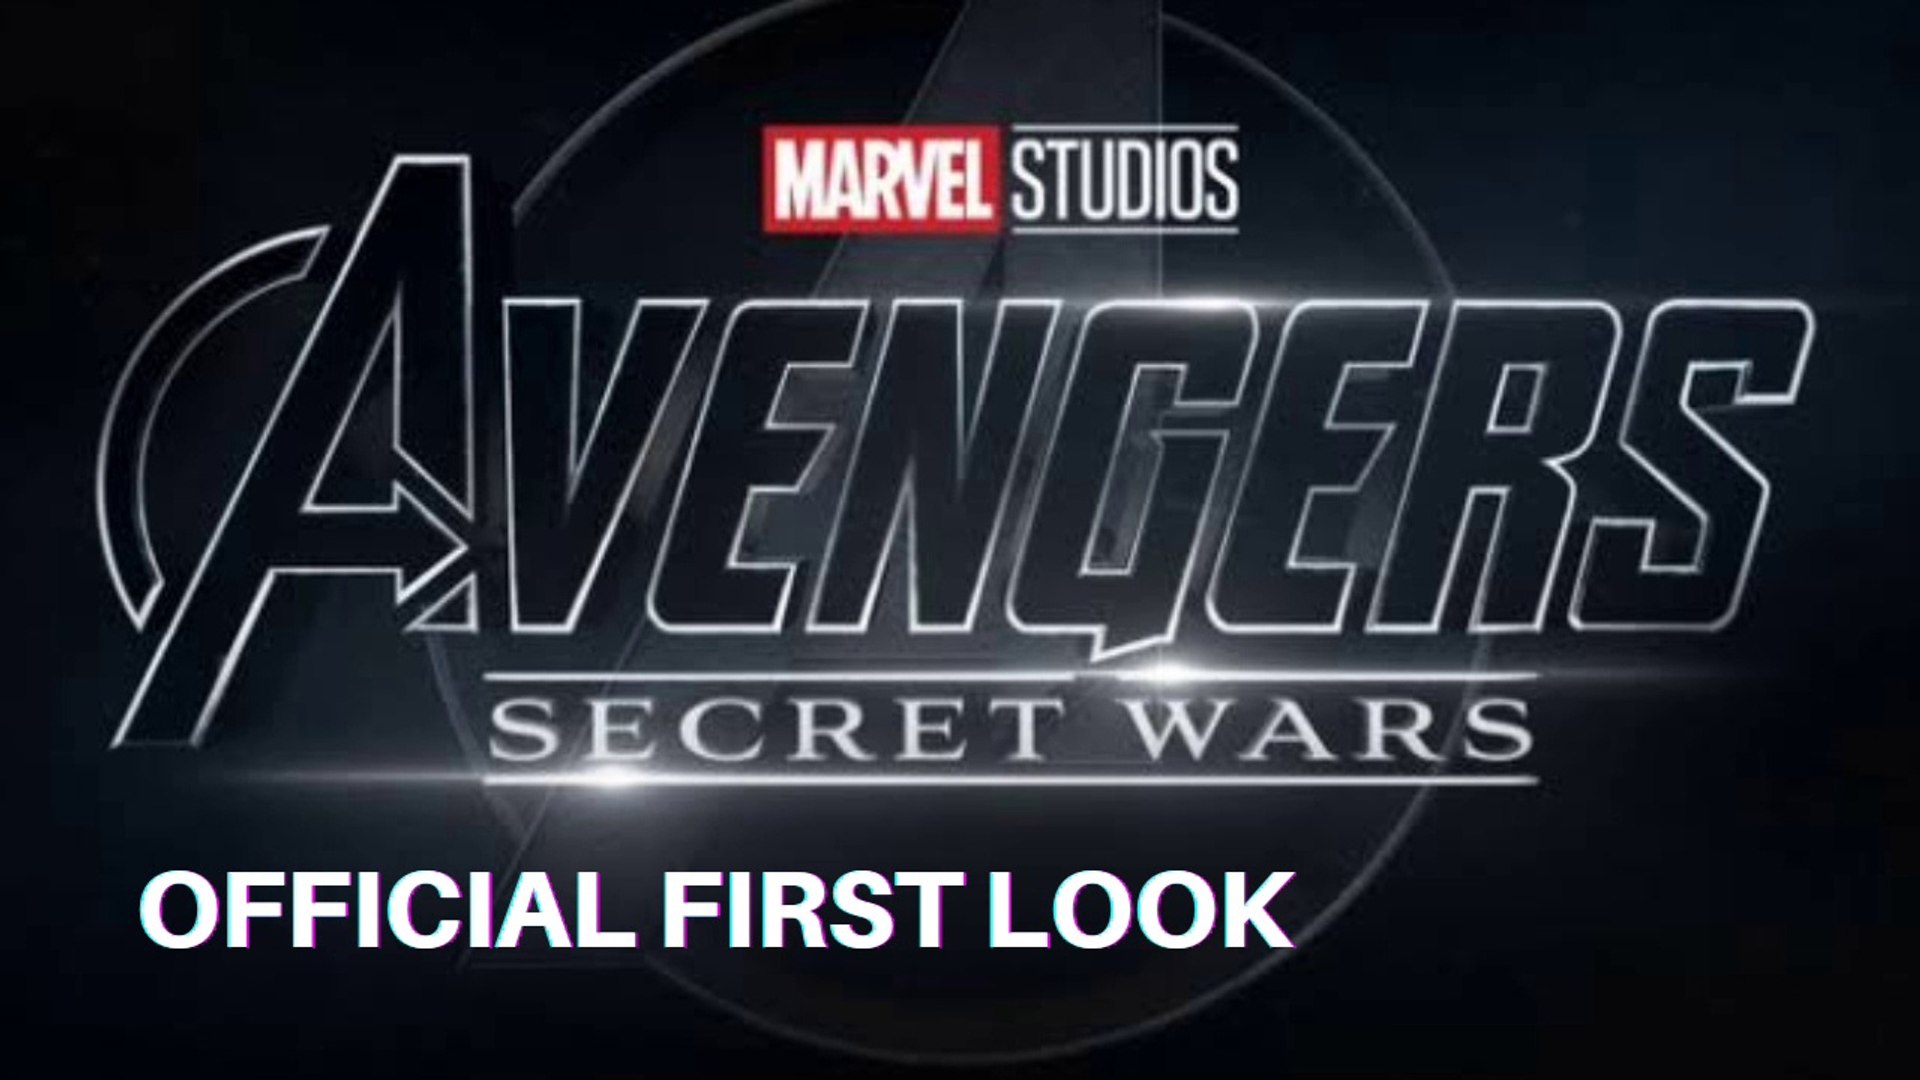 AVENGERS SECRET WARS Official First Look Teaser Trailer New